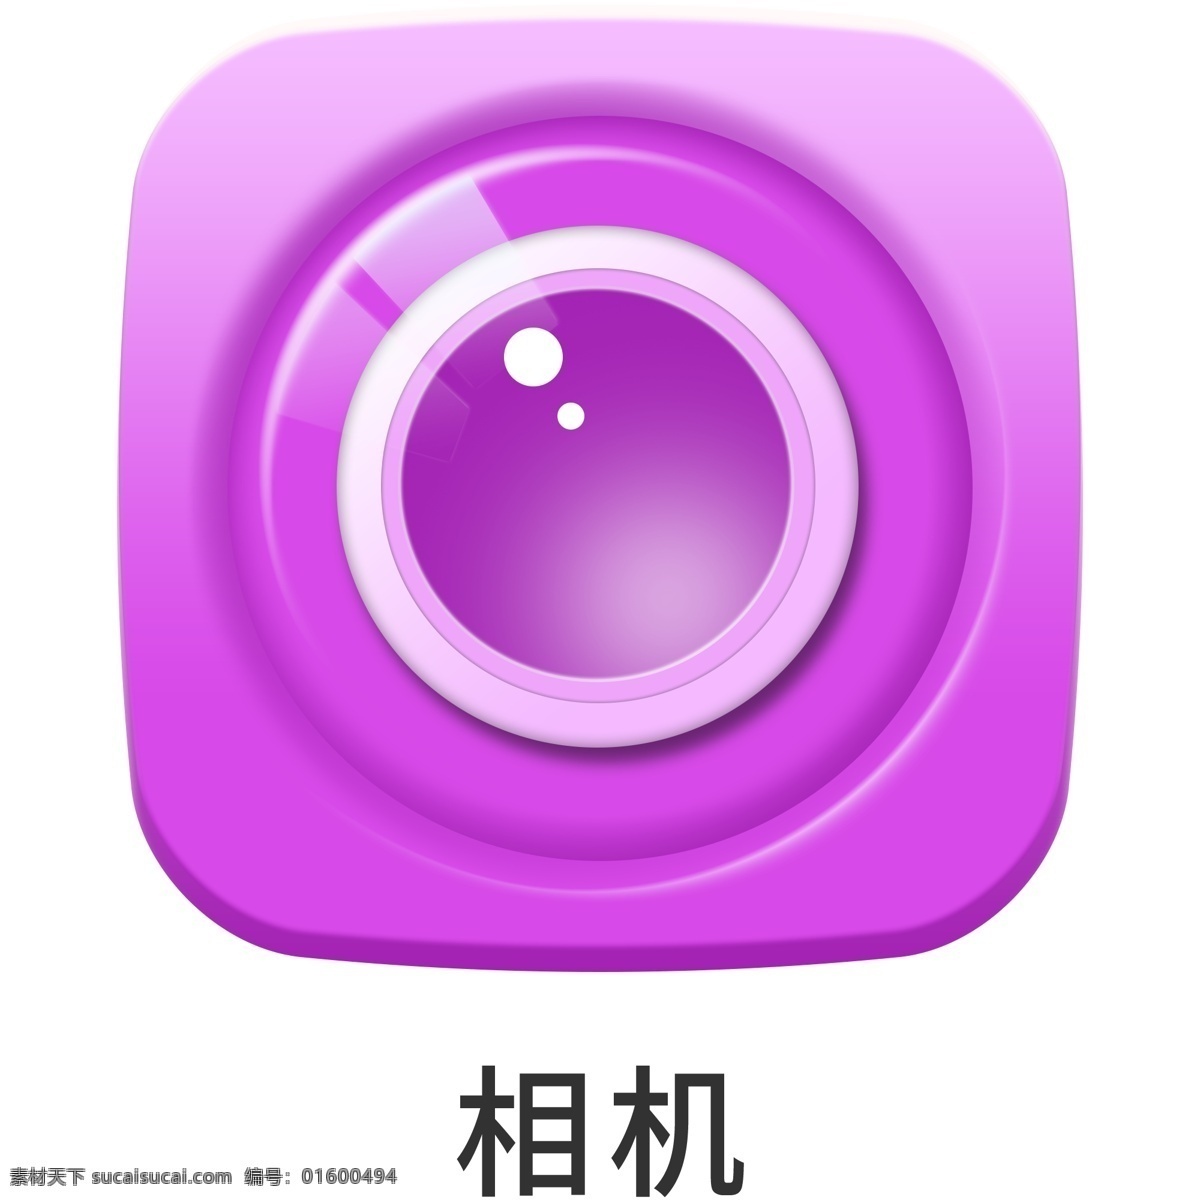 手机 主题 多彩 浮雕 相机 icon 元素 ui图标 彩色 图标 设计元素 手机主题 图标按钮